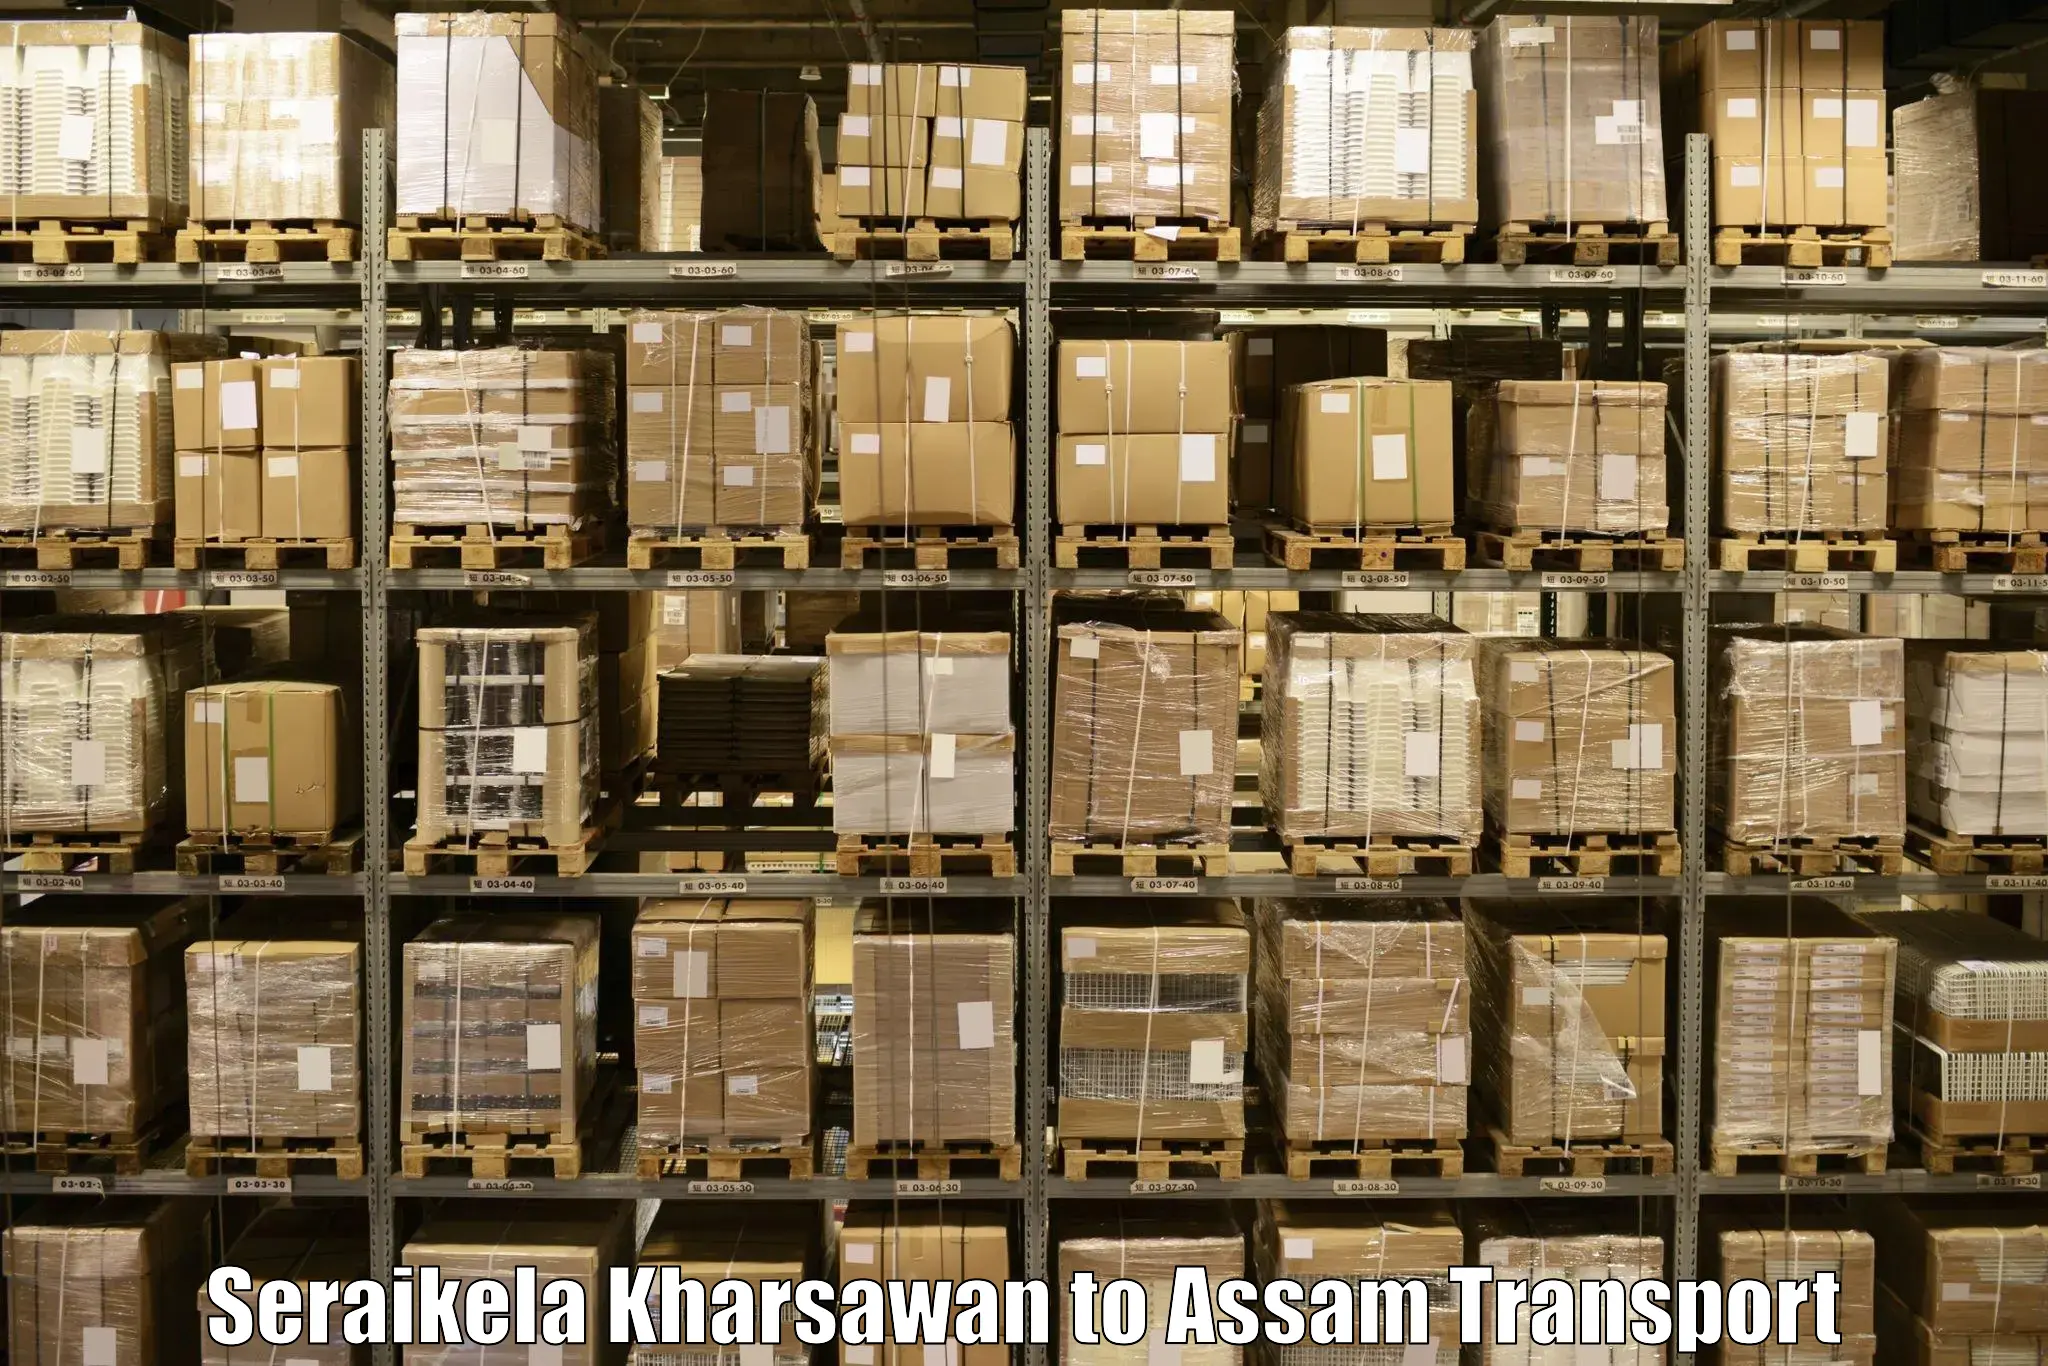 Furniture transport service Seraikela Kharsawan to Lakhipur